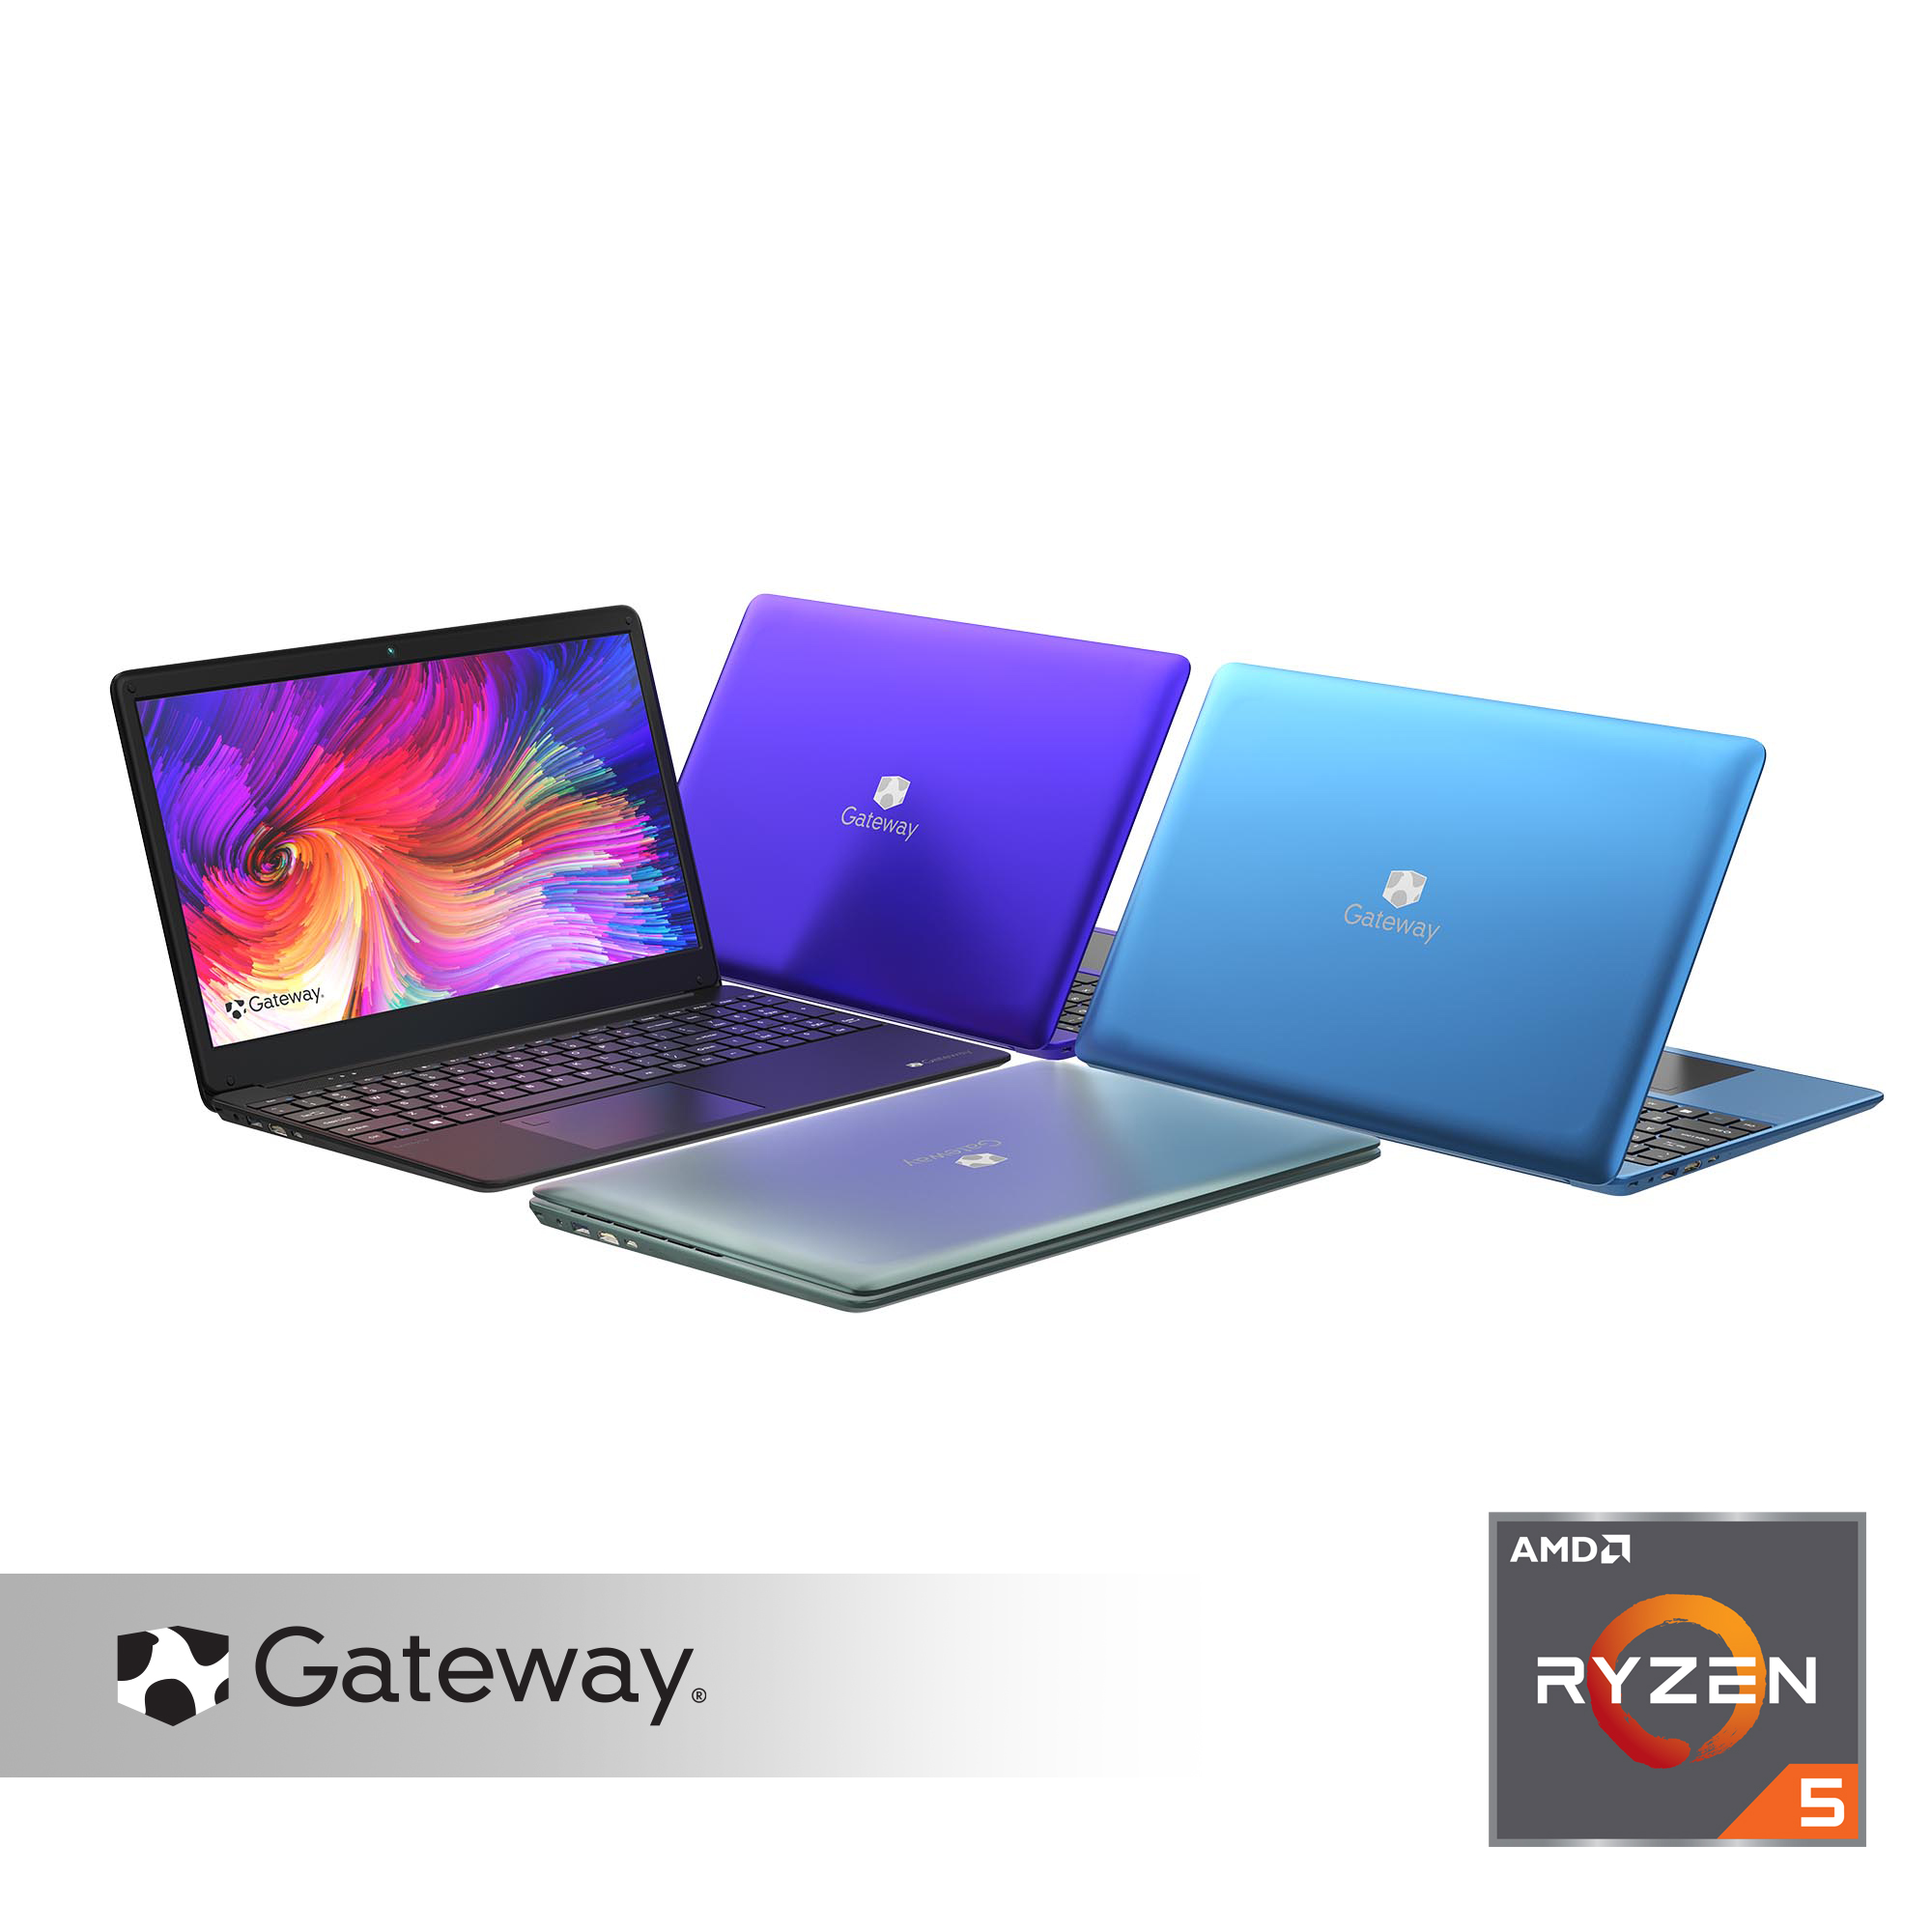 Gateway 15.6" FHD Ultra Slim Notebook, AMD Ryzen 5 3450U, 8GB RAM, 256GB SSD $319